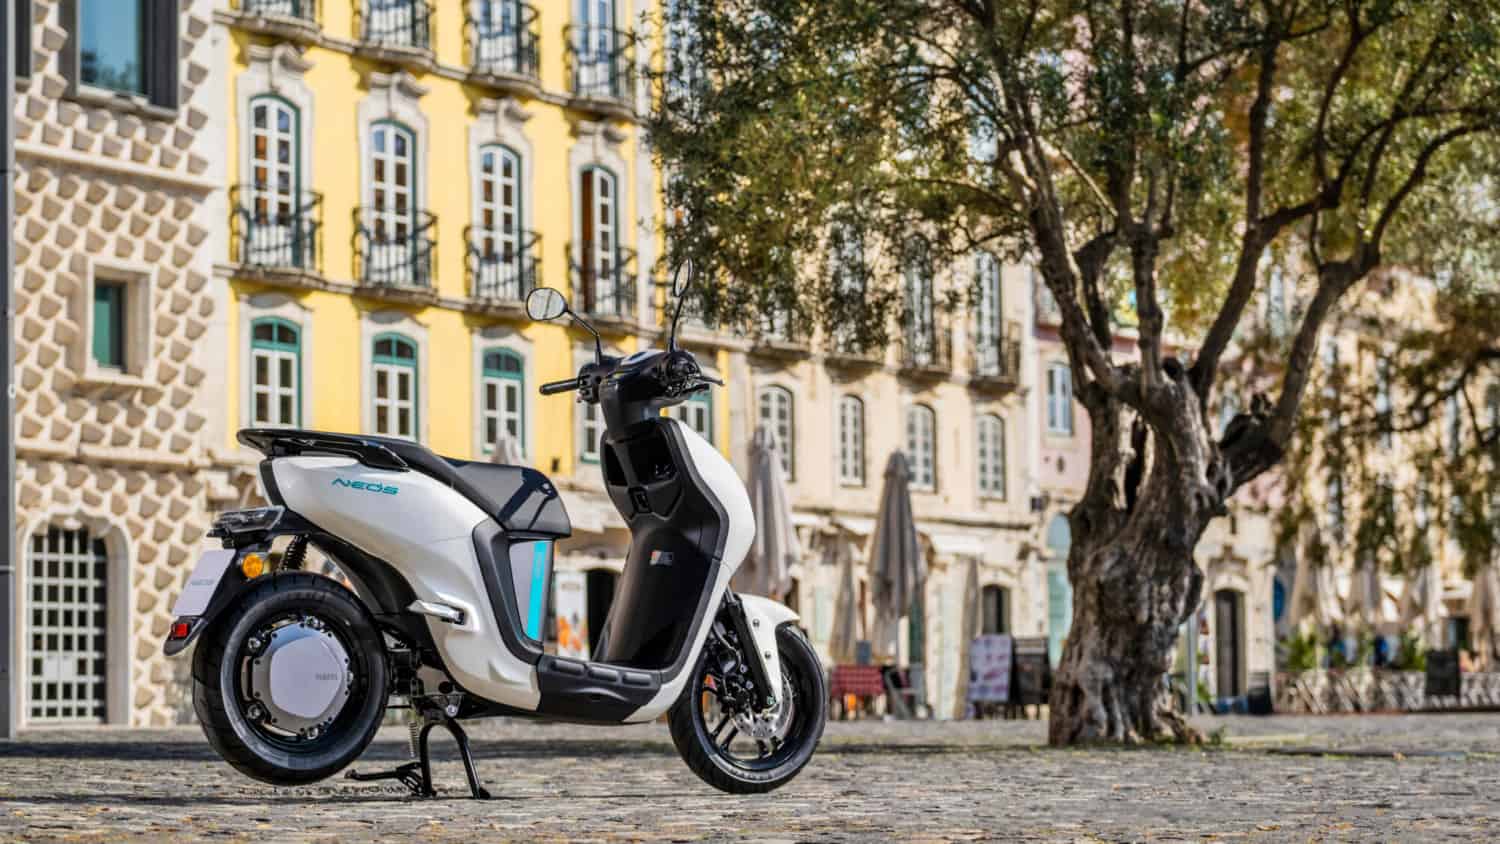 Yamaha præsenterer ny mobilitetsløsning til bykørsel